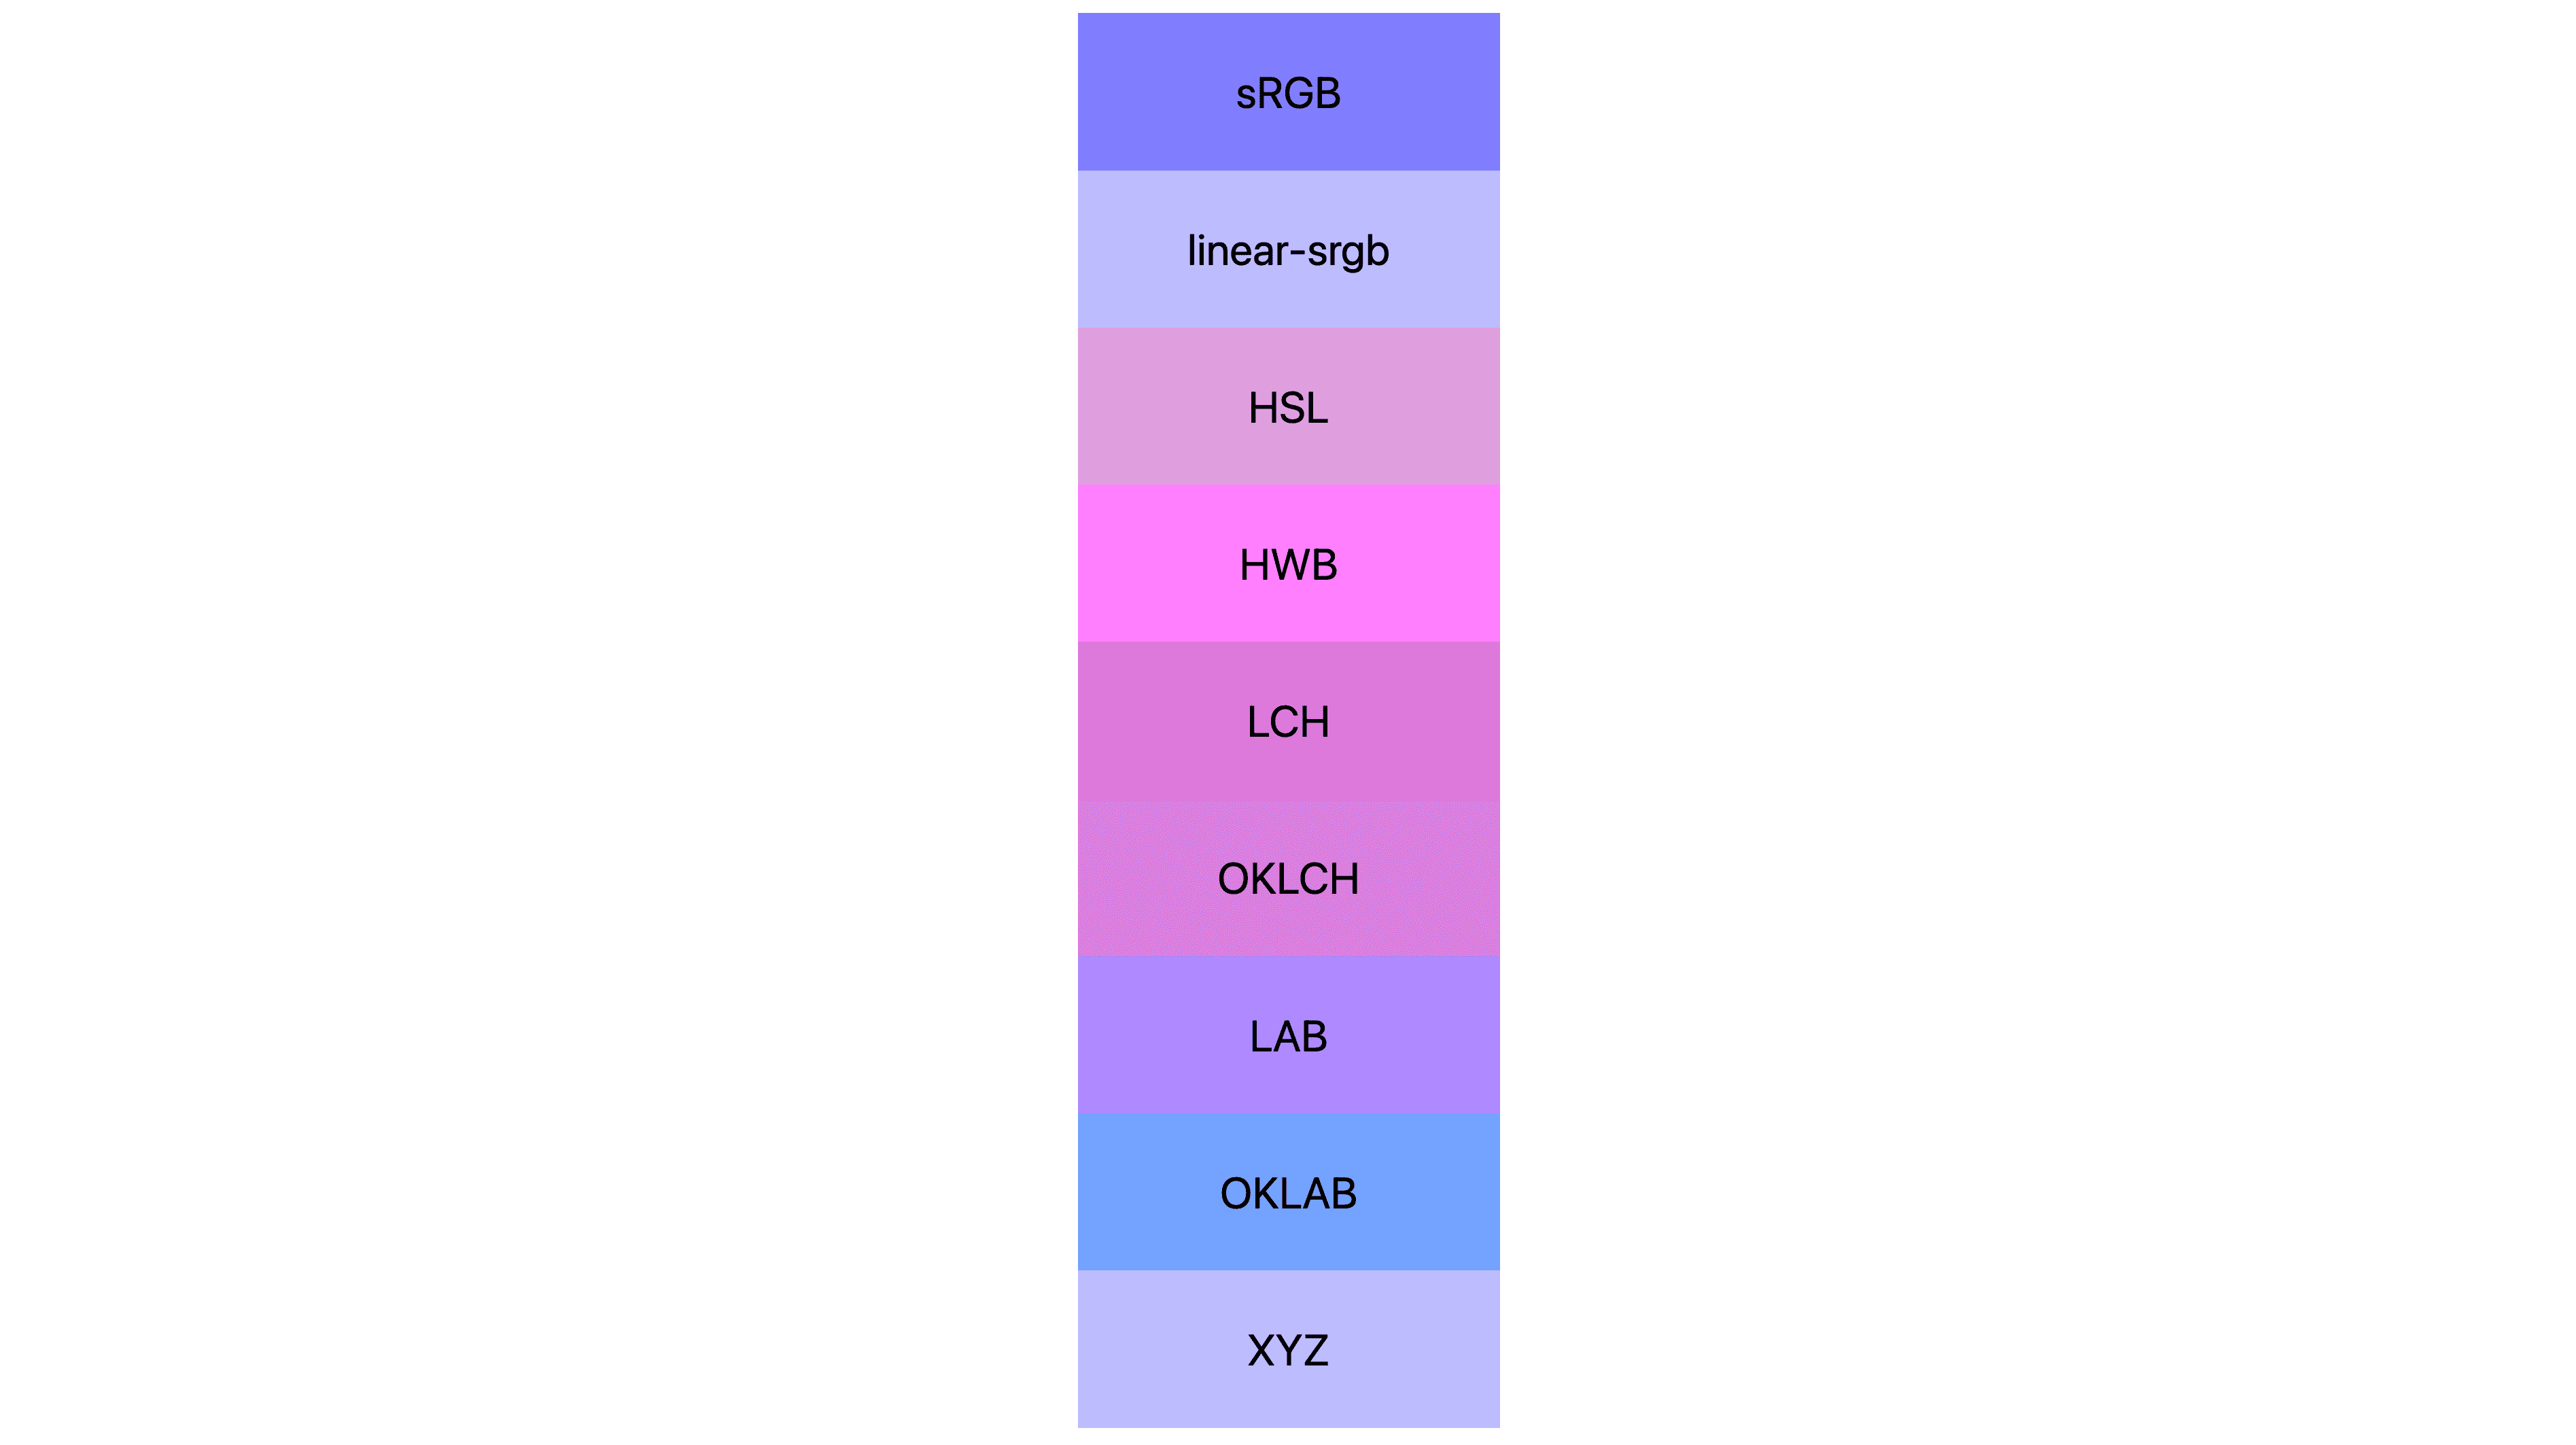 7 przestrzeni kolorów (srgb, linear-srgb, lch, oklch, lab, oklab, xyz) uzyskało inne wyniki. Wiele jest różowych lub fioletowych, a niewiele z nich jest nadal niebieskich.